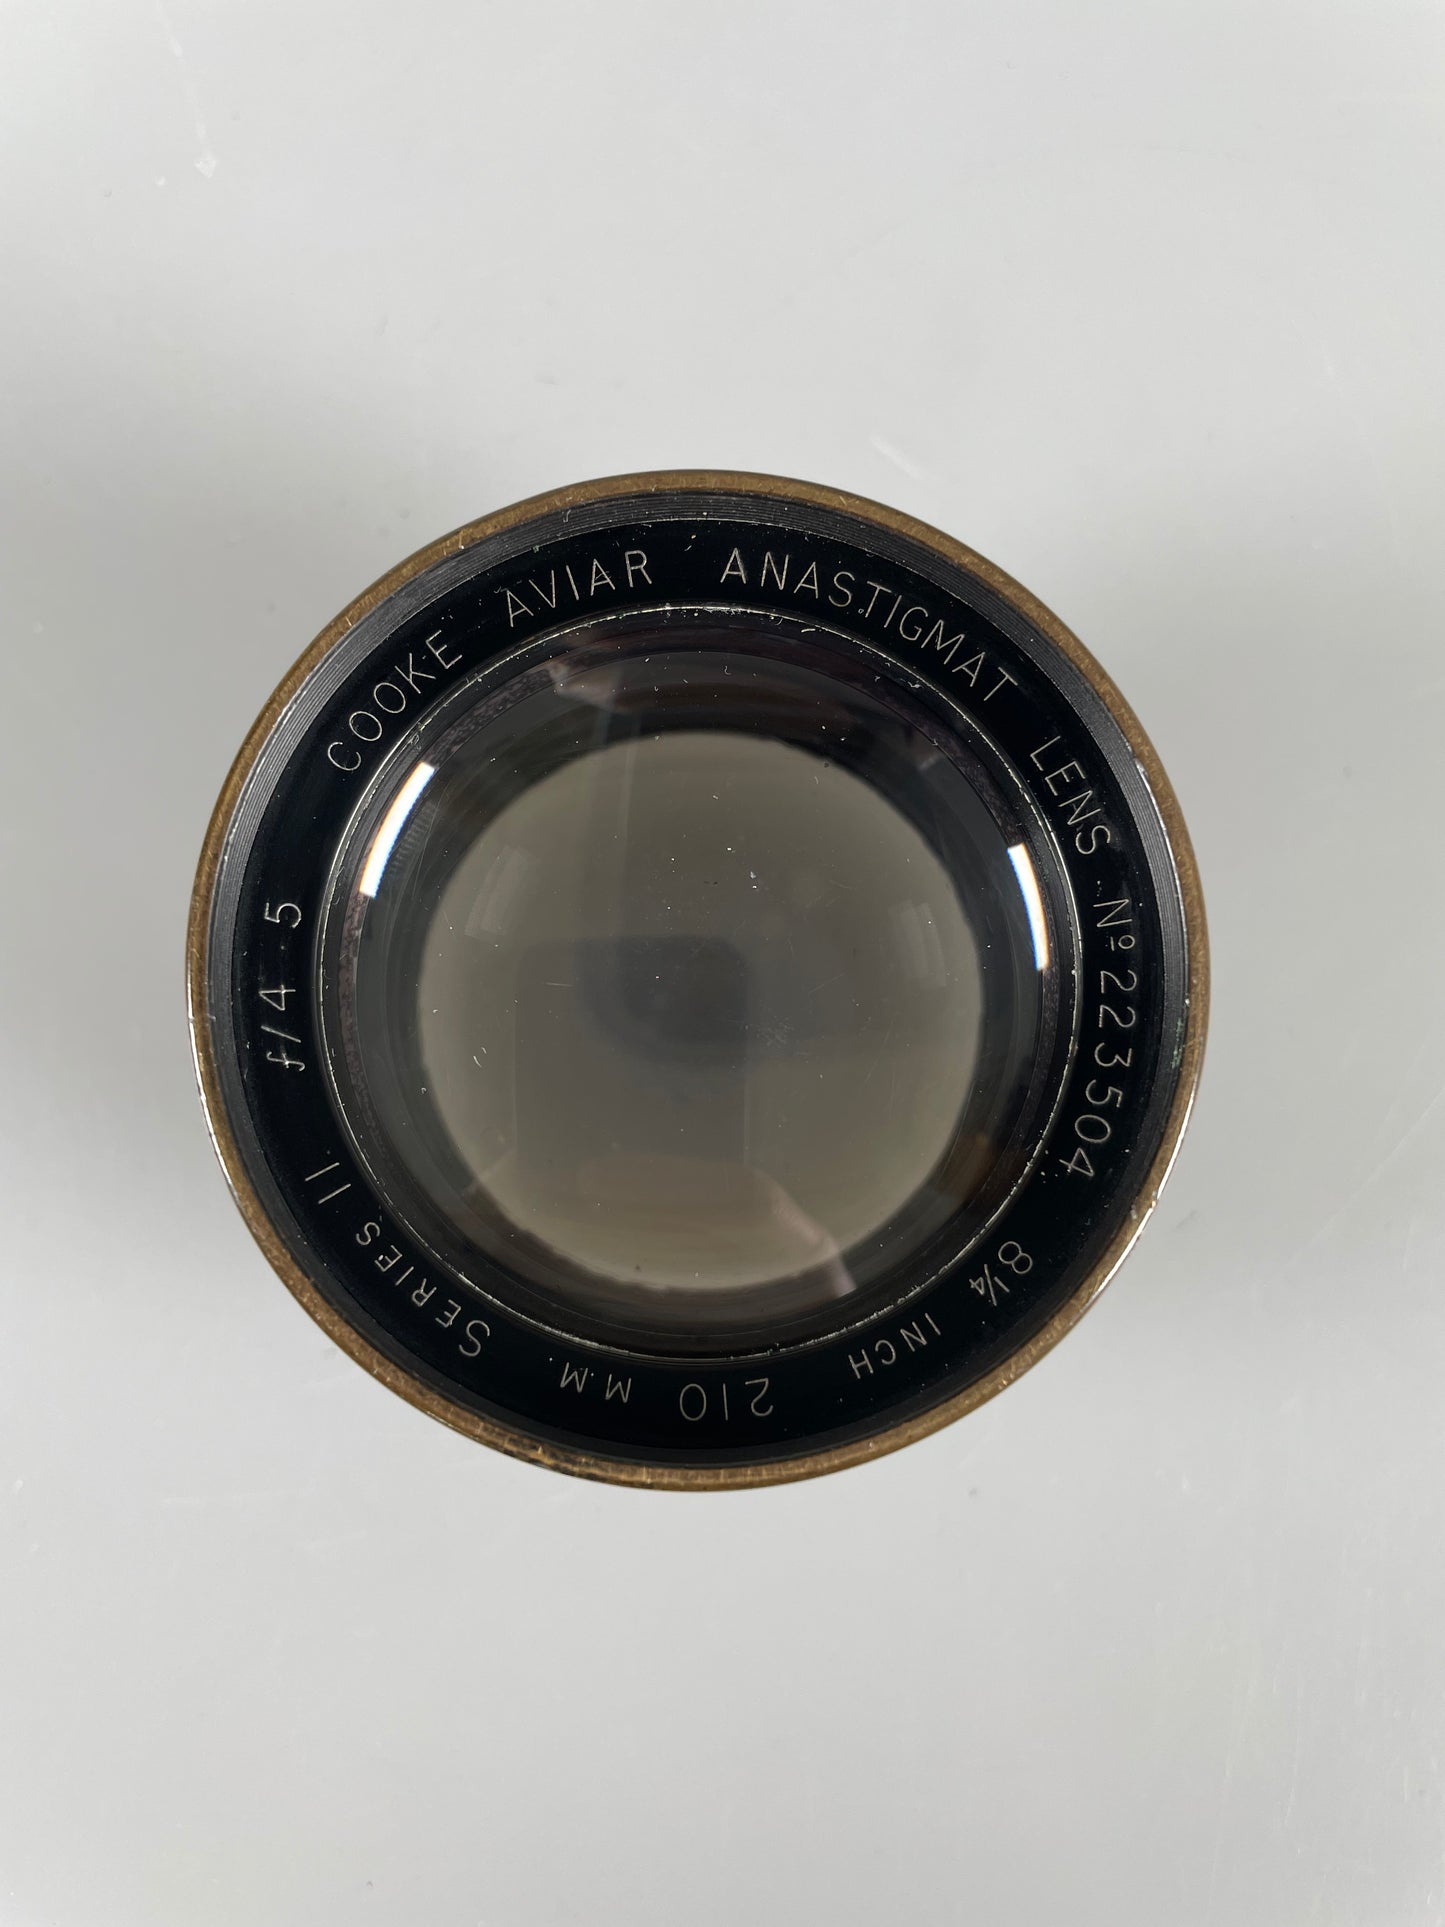 Cooke Aviar 8 1/4 in inch (210mm) f4.5 Series II barrel lens